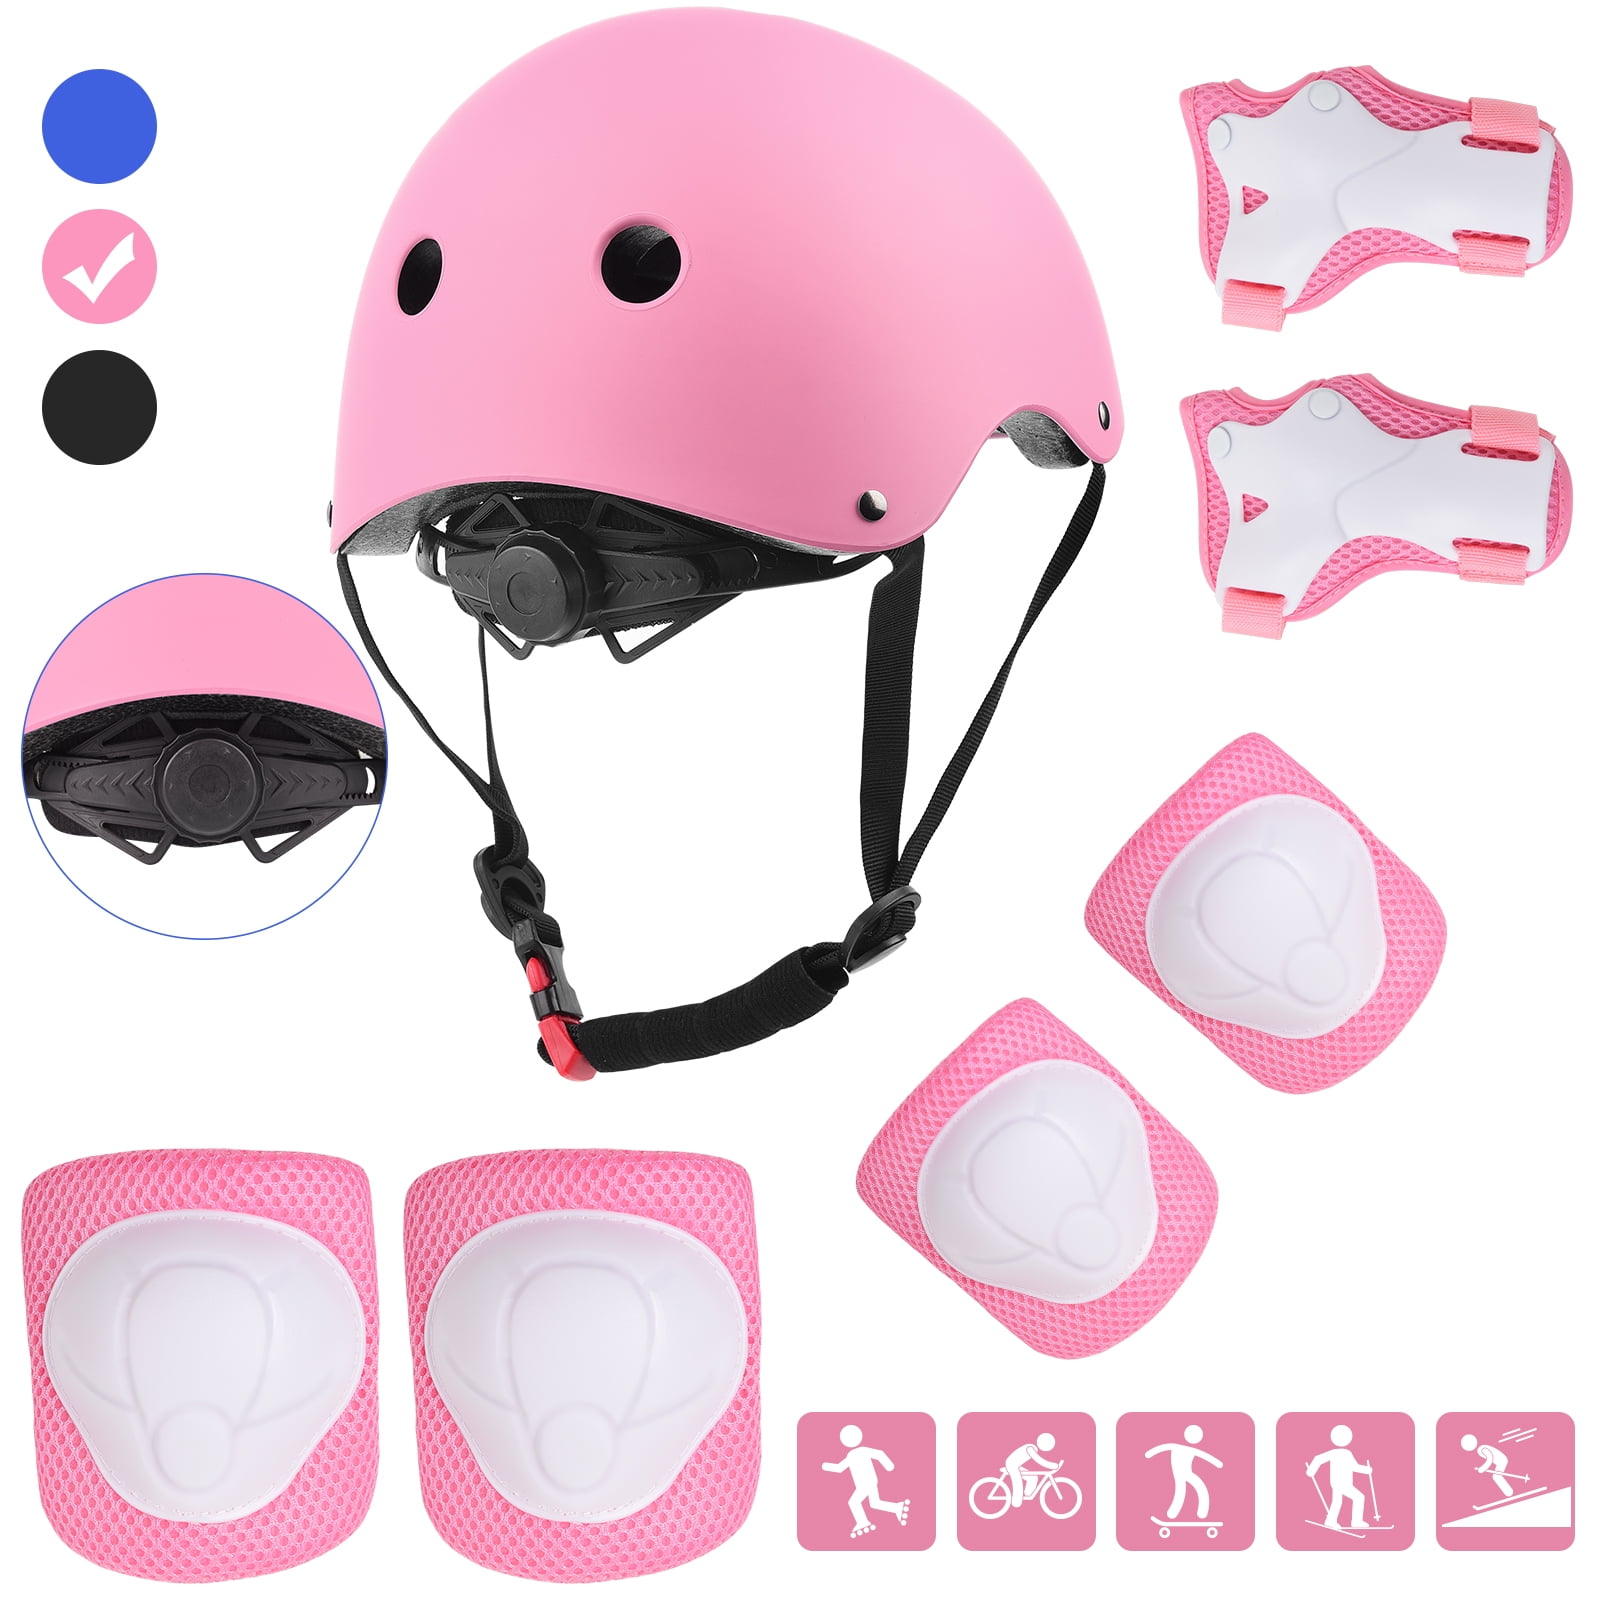 Bike Protective Gear Set Safety Roller Skating Bike Helmet Kids Knee Elbow S/M/L 